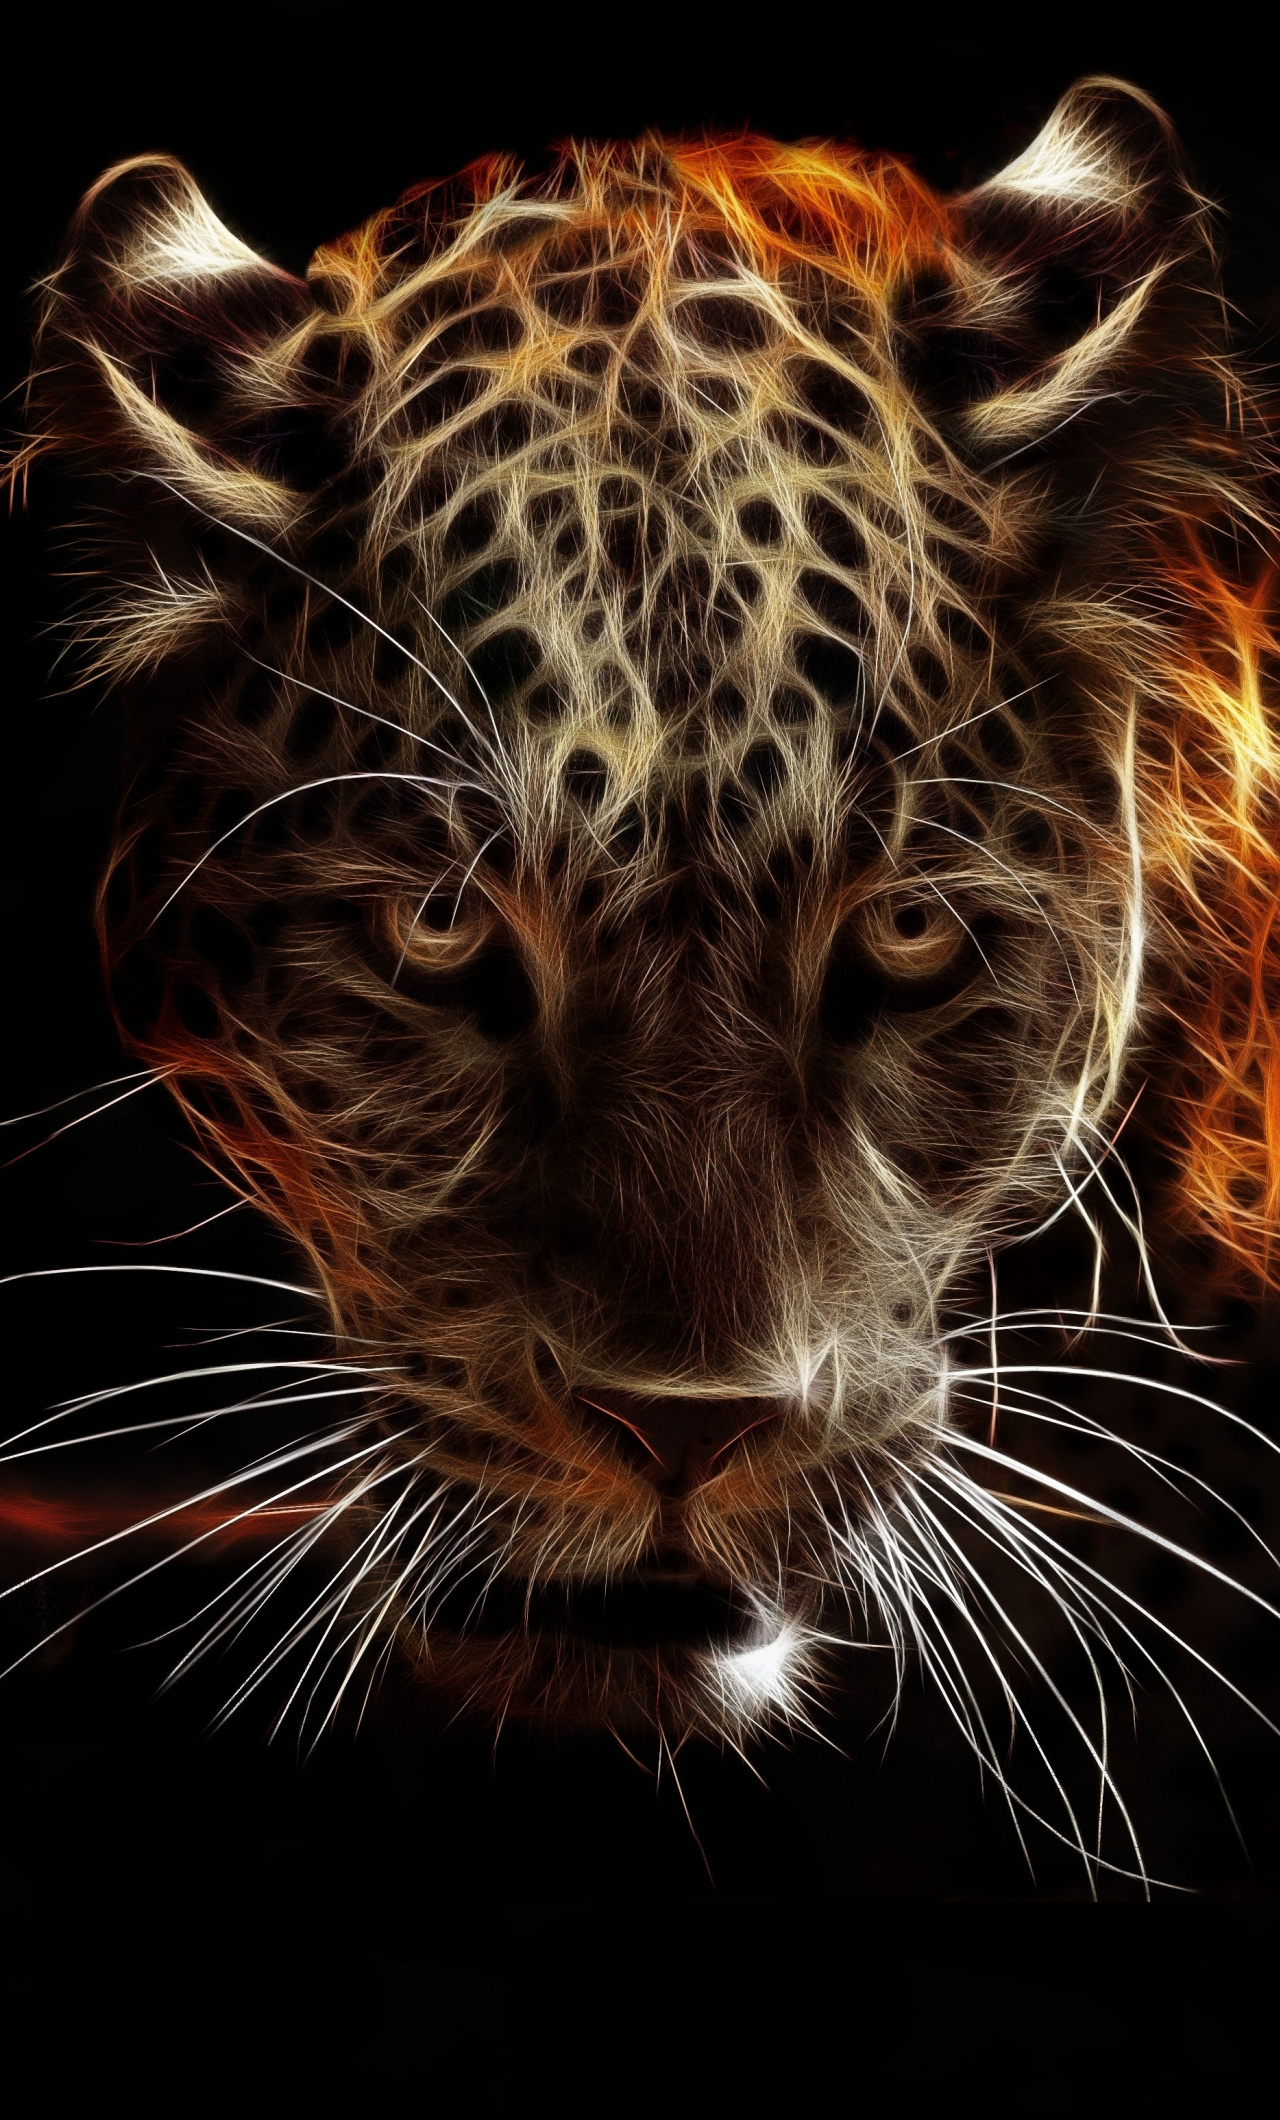 Download 1280x2120 wallpaper jaguar, animal, wildlife, artwork